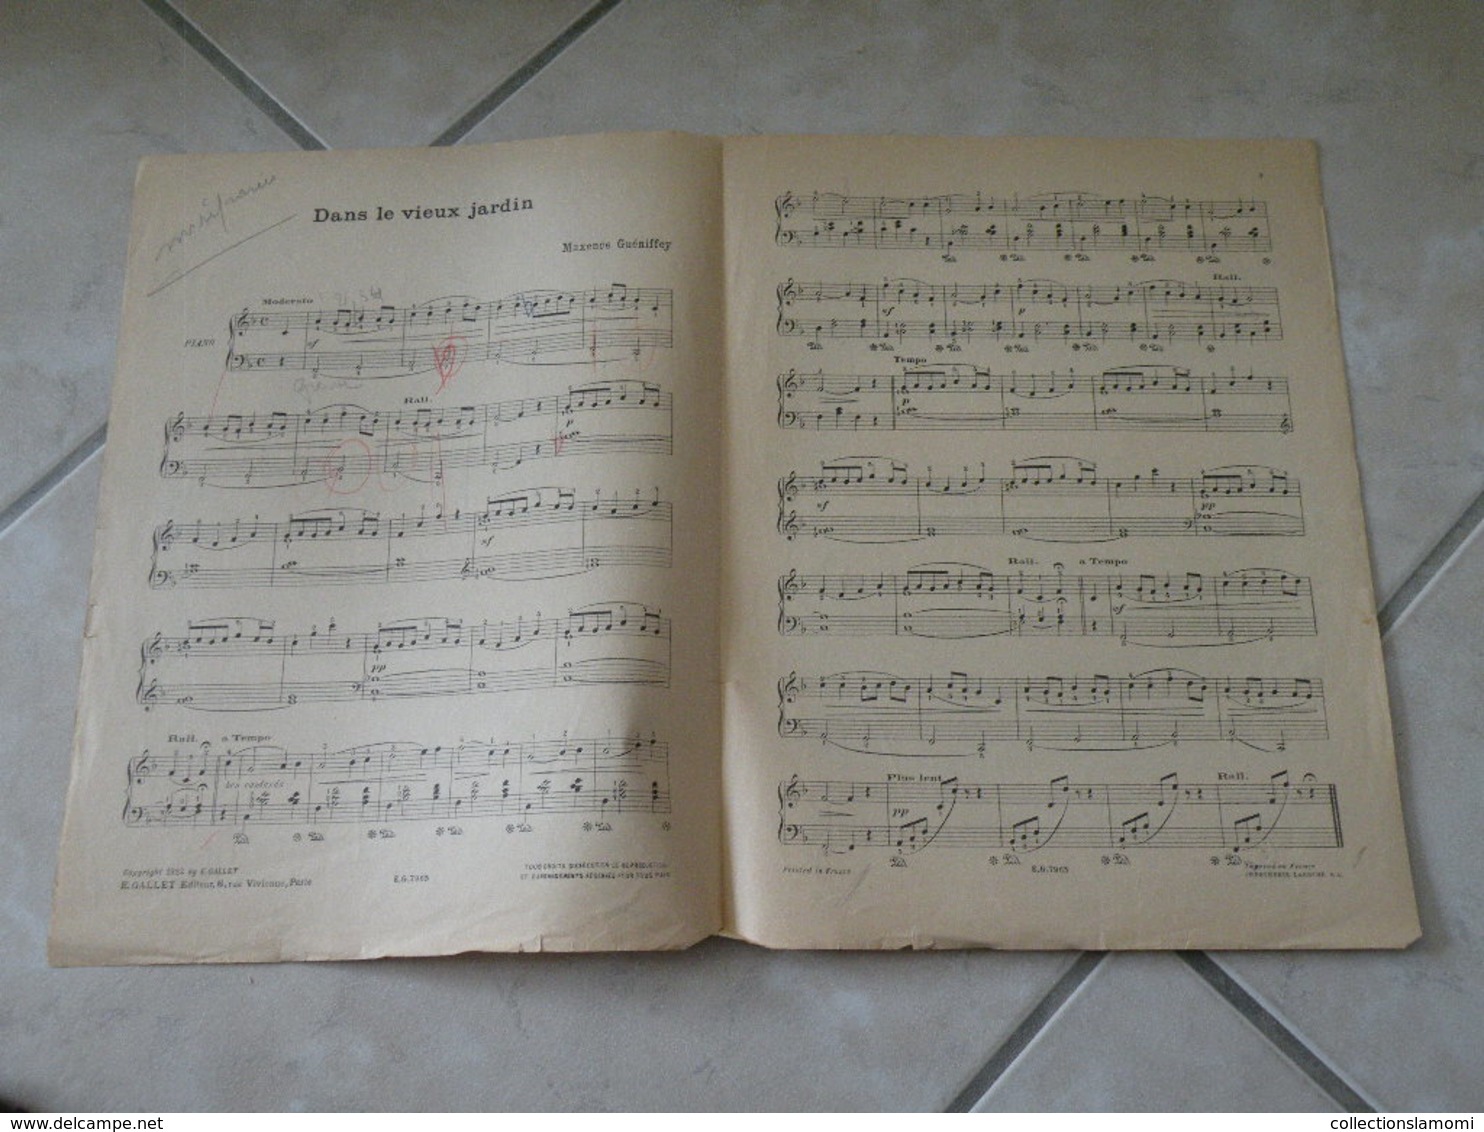 Dans Le Vieux Jardin & Trotte Petit ânon -(Musique Maxence Guéniffey)- Partition (Piano) 1922 - Keyboard Instruments